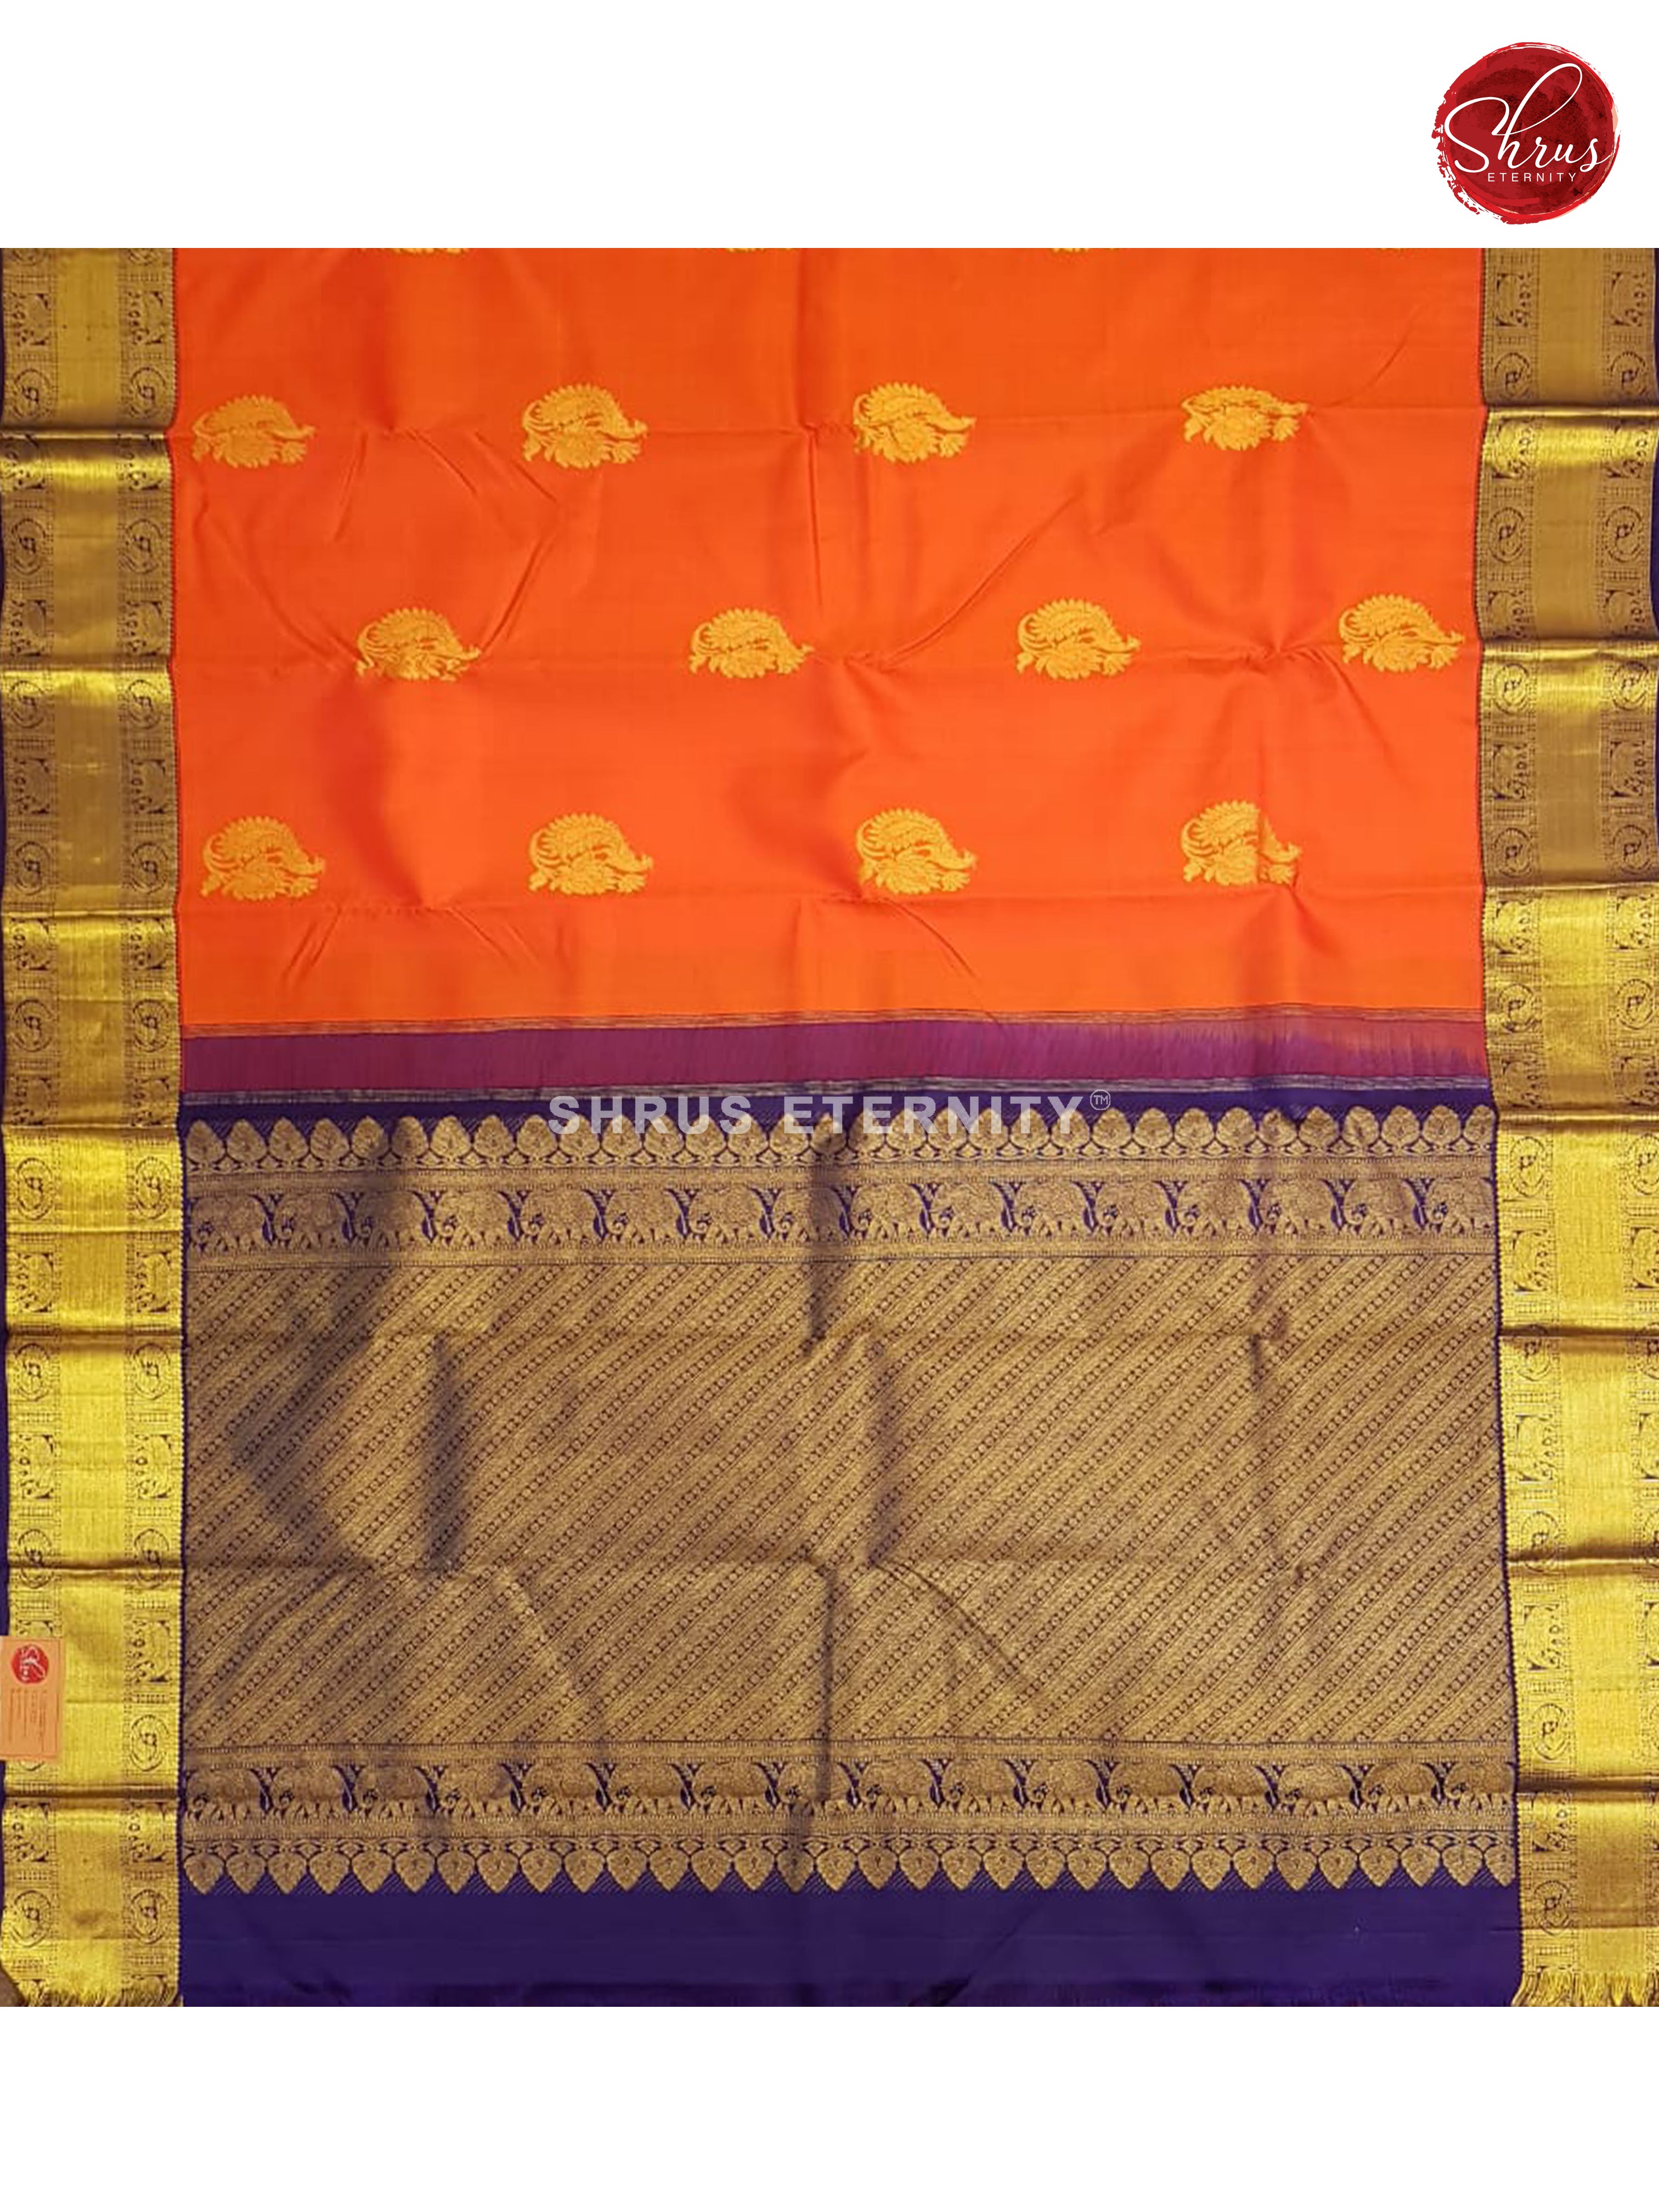 Fanta Orange & Violet - Kanchipuram Silk - Shop on ShrusEternity.com